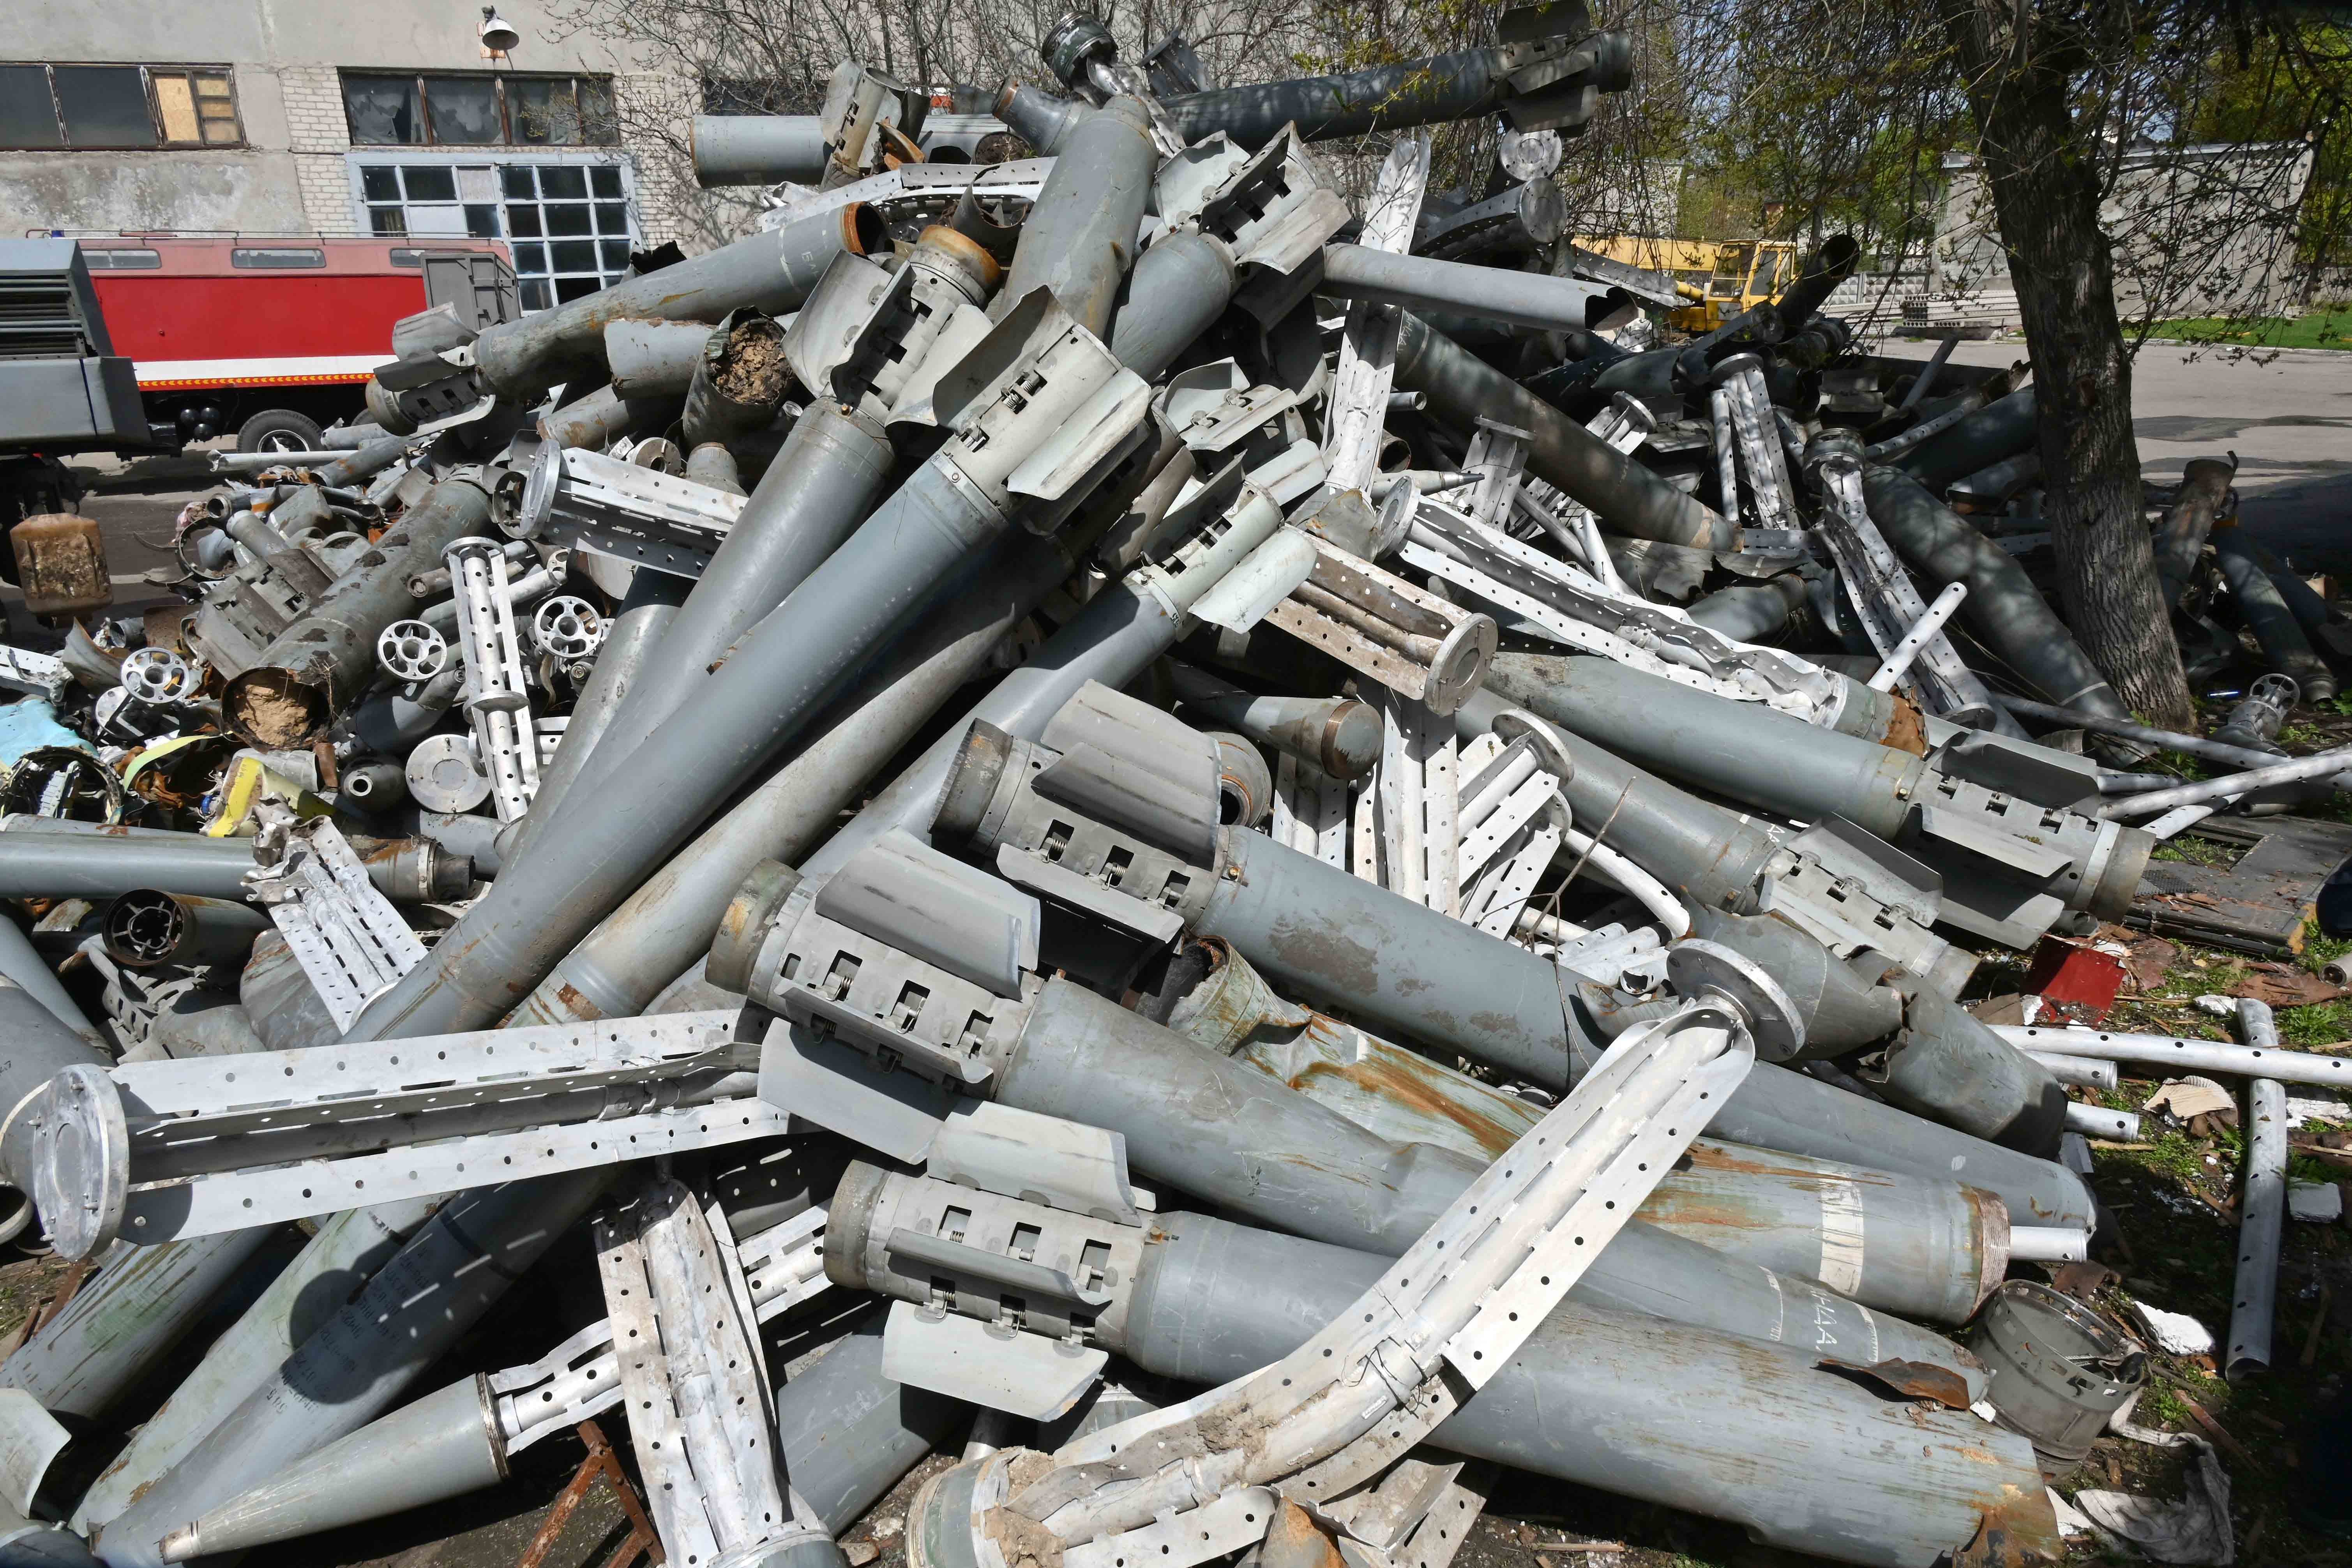 Des débris de dizaines de roquettes à sous-munitions russes « Smerch » et « Uragan » récupérés par les Services d’urgence de l’État ukrainien à Kharkiv en avril 2022.  